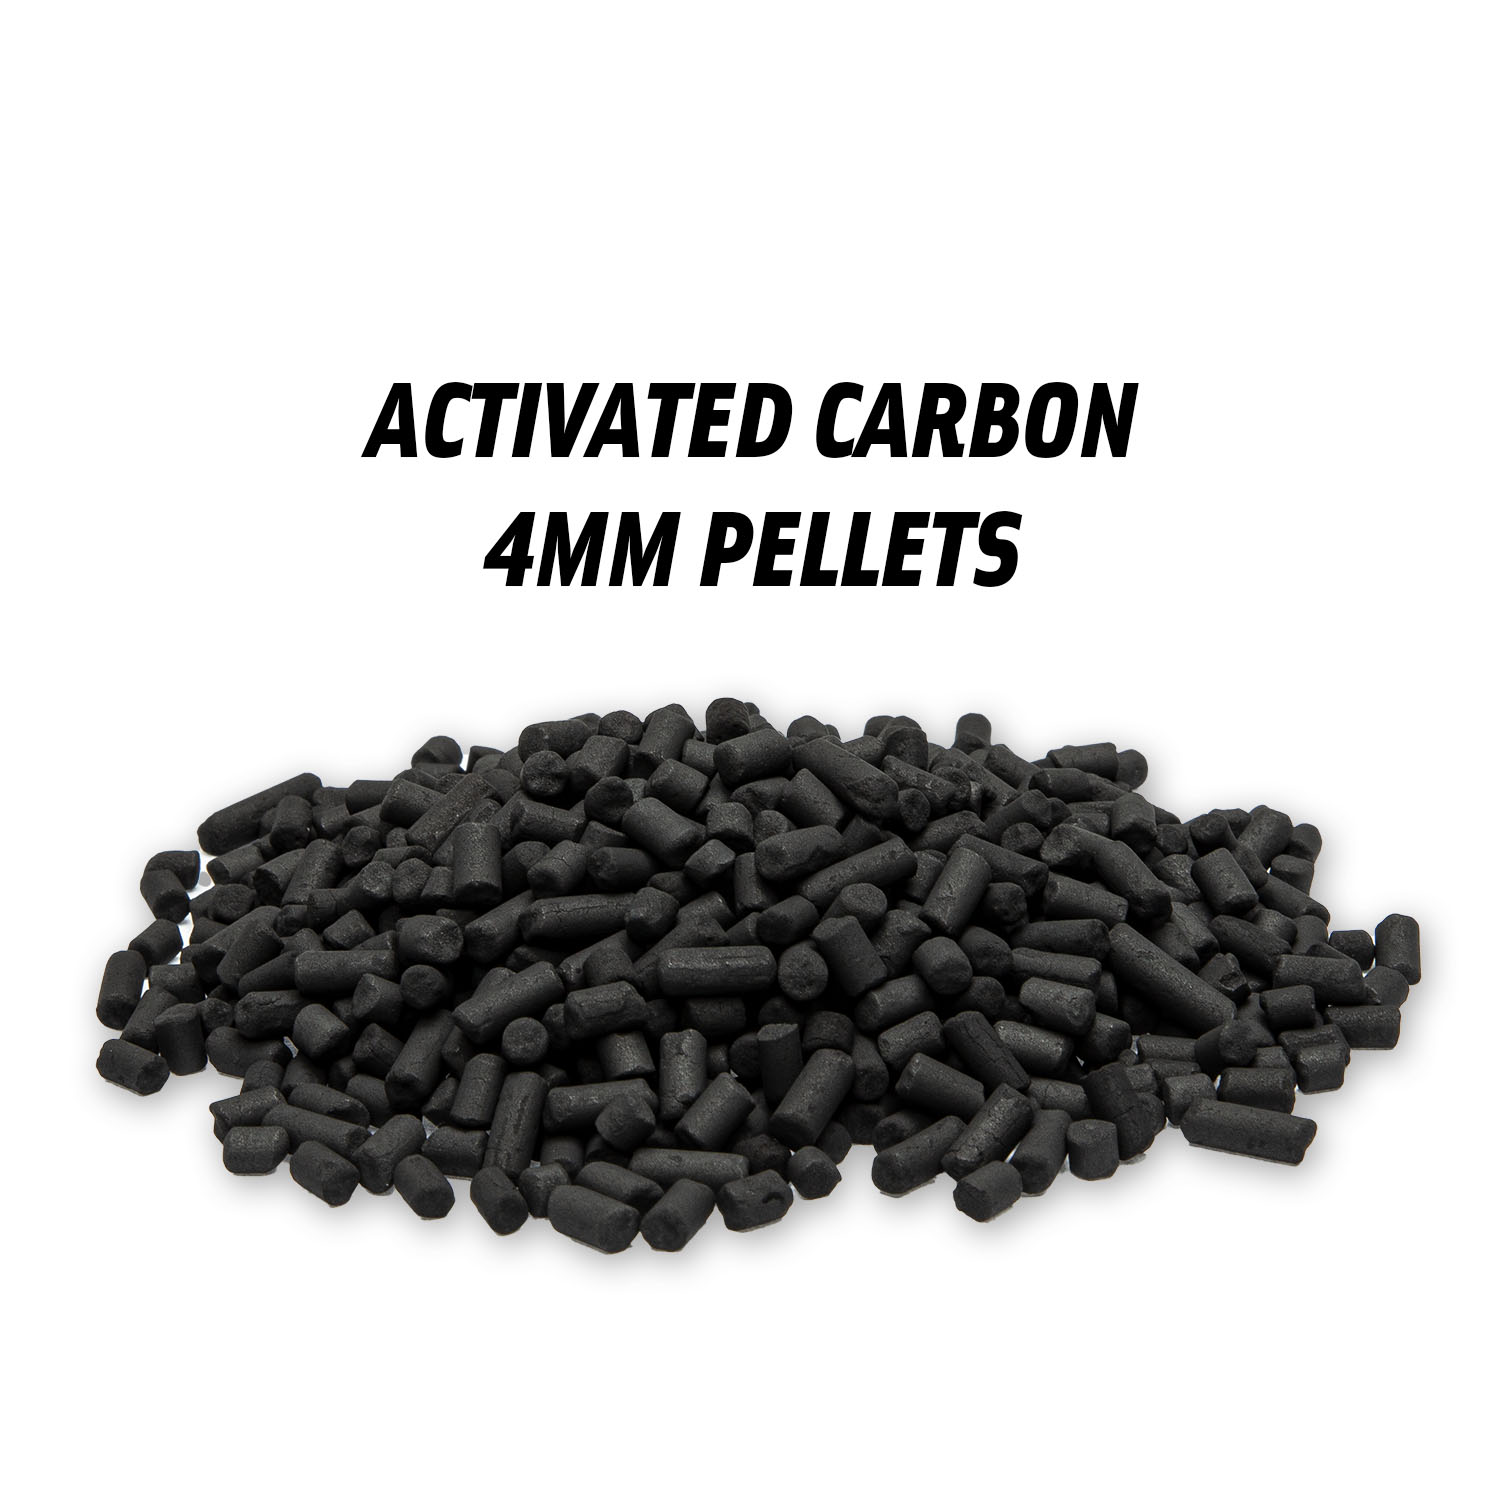 K1804 - 4 mm pellets, 2,5 kg of activated carbon - primaklima